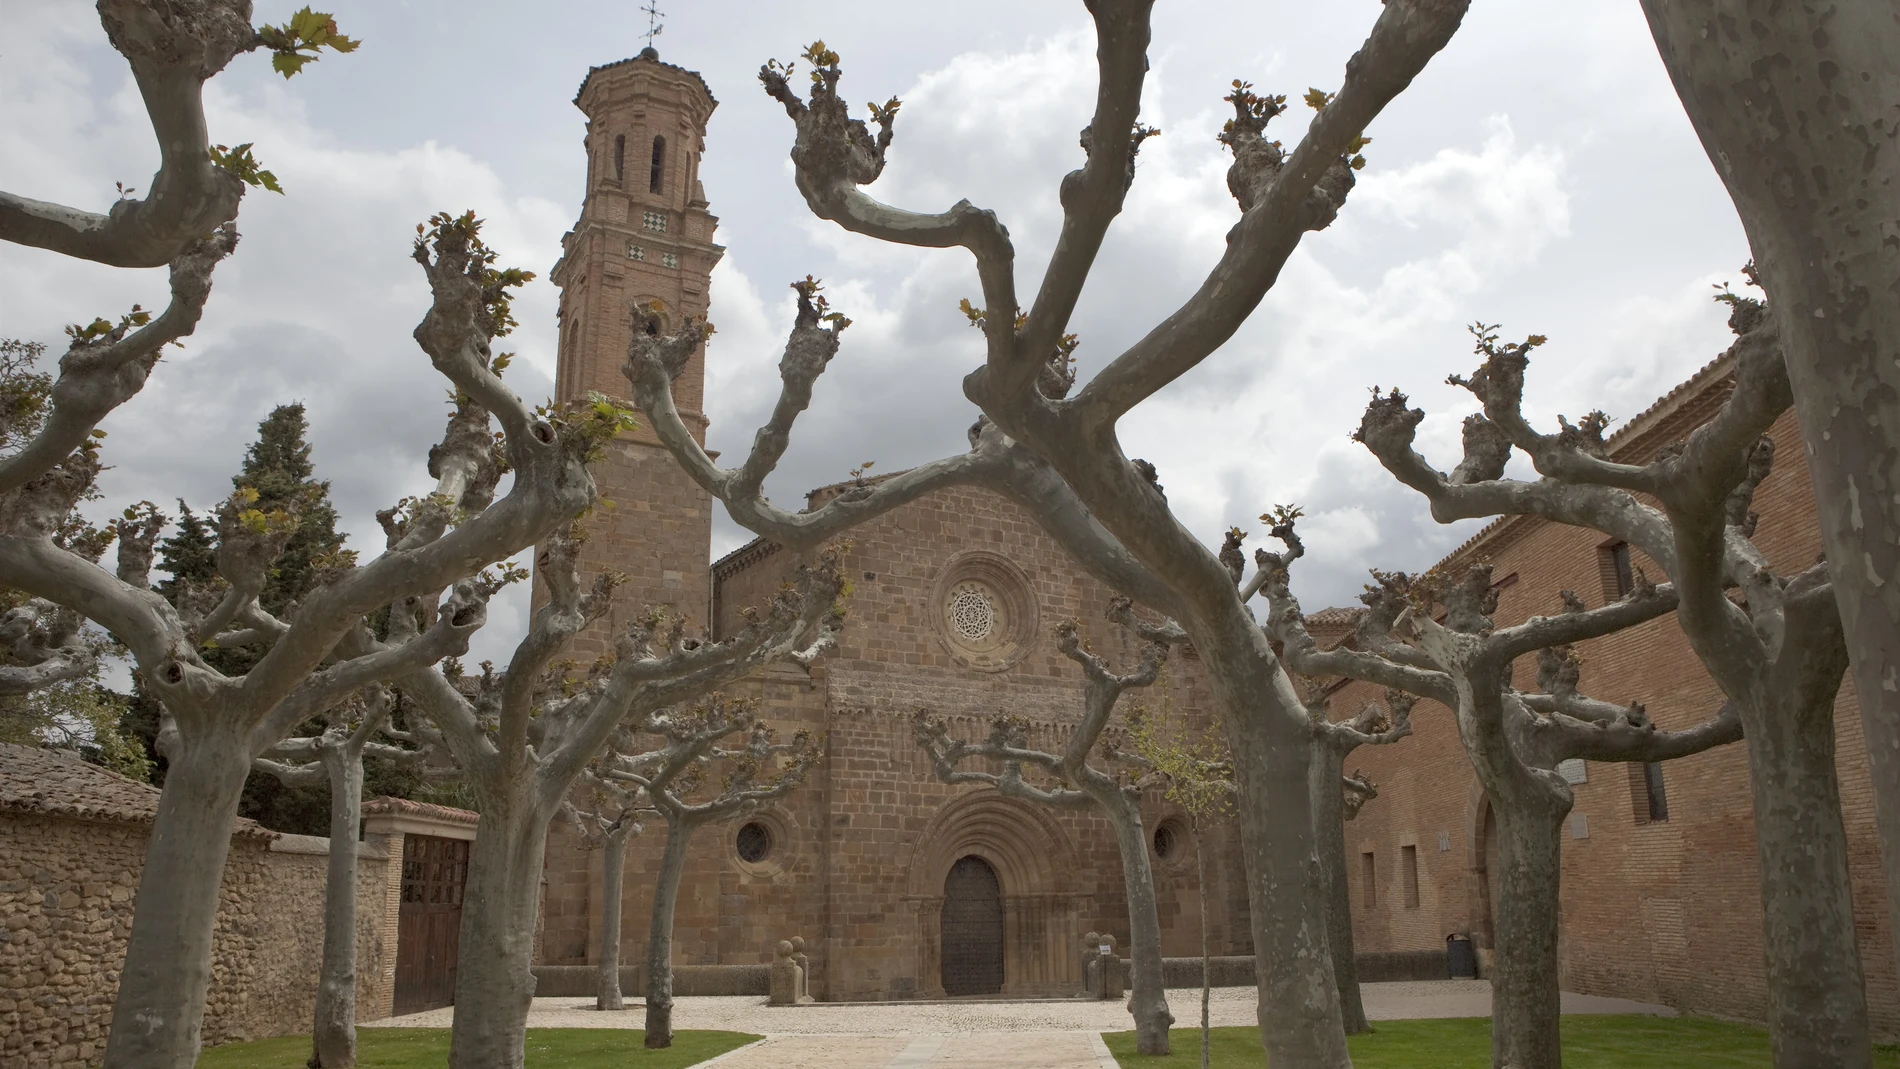 Desalojado, por precaución, el Monasterio de Veruela (Zaragoza) por el terremoto con epicentro en Purujosa